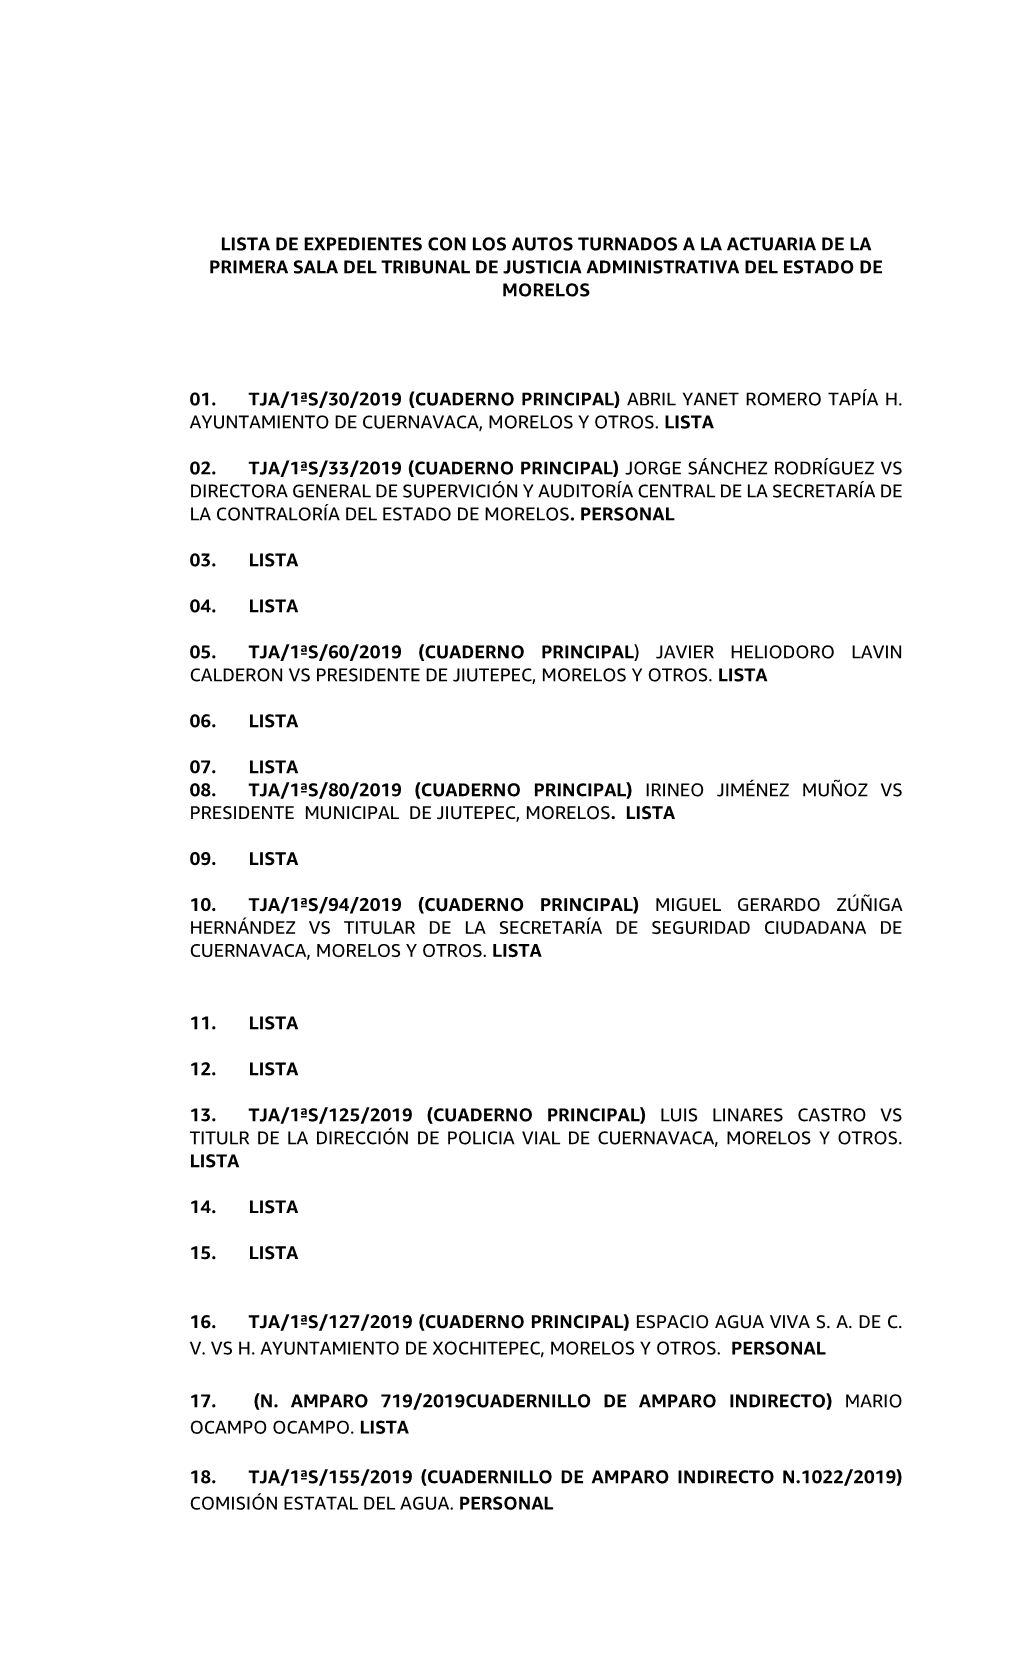 Lista De Expedientes Con Los Autos Turnados a La Actuaria De La Primera Sala Del Tribunal De Justicia Administrativa Del Estado De Morelos